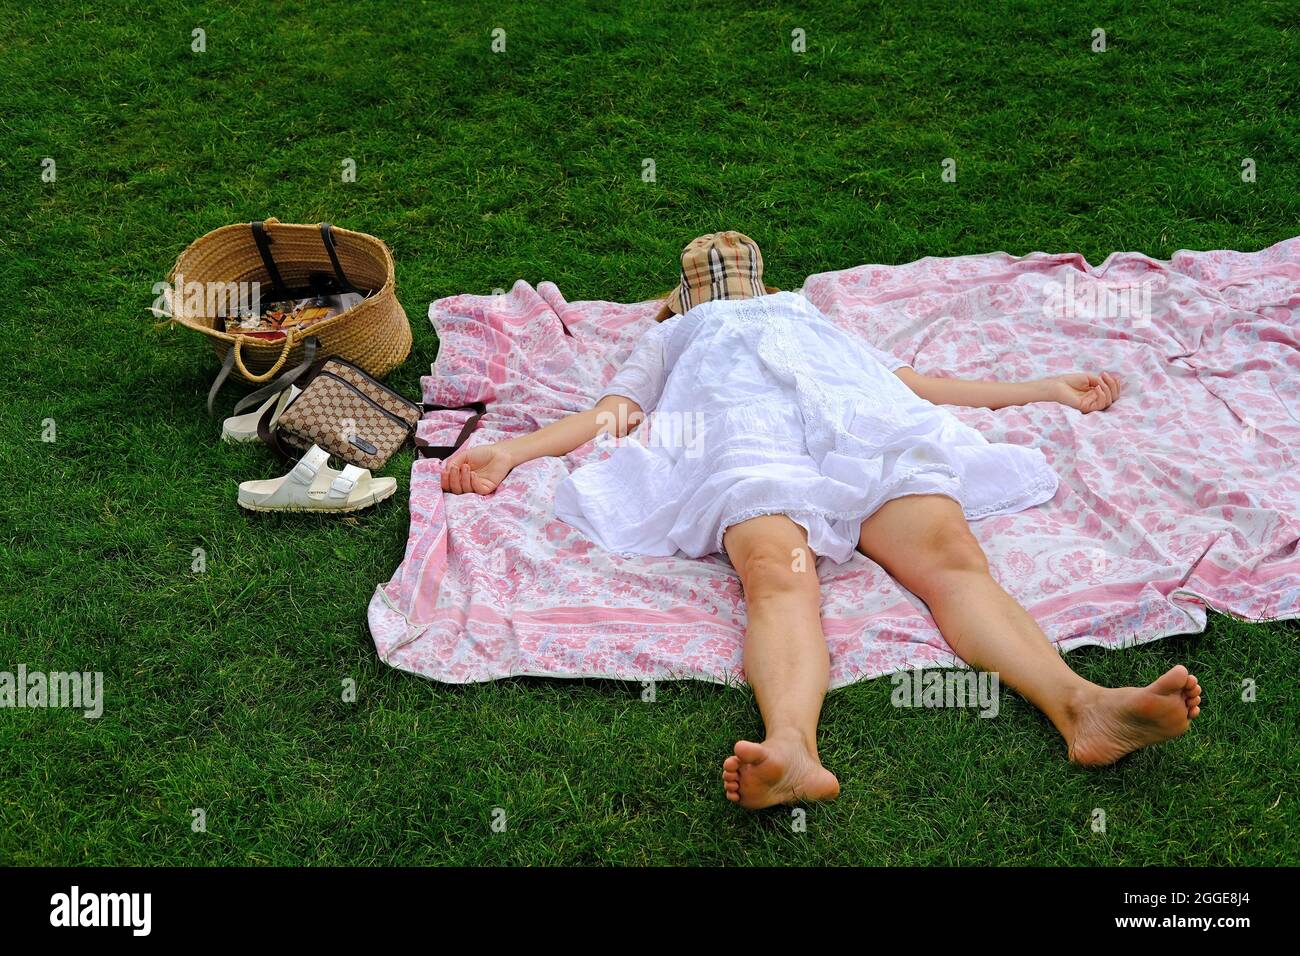 Une femme endormie après les effets de la consommation de jour. Banque D'Images